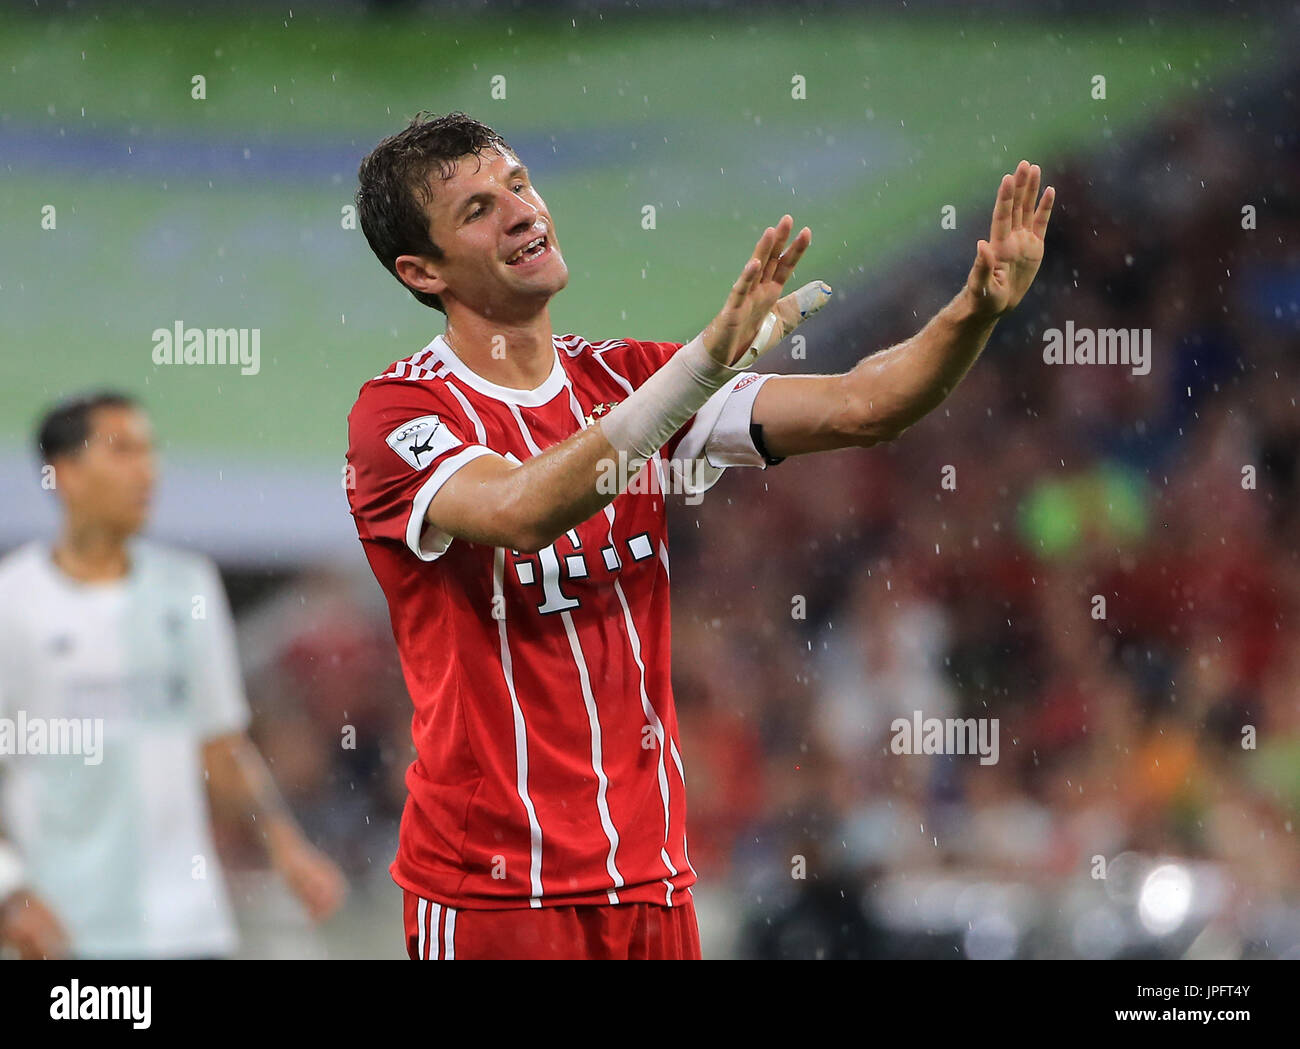 (170802) -- MUNICH, le 2 août 2017(Xinhua) -- le Bayern Munich's Thomas Mueller réagit au cours d'un match de demi-finale de la coupe d'Audi 2017 entre Liverpool F.C. d'Angleterre et d'Allemagne, le Bayern de Munich à Munich, Allemagne, le 1 août, 2017. Liverpool a gagné 3-0. (Xinhua/Philippe Ruiz) Banque D'Images